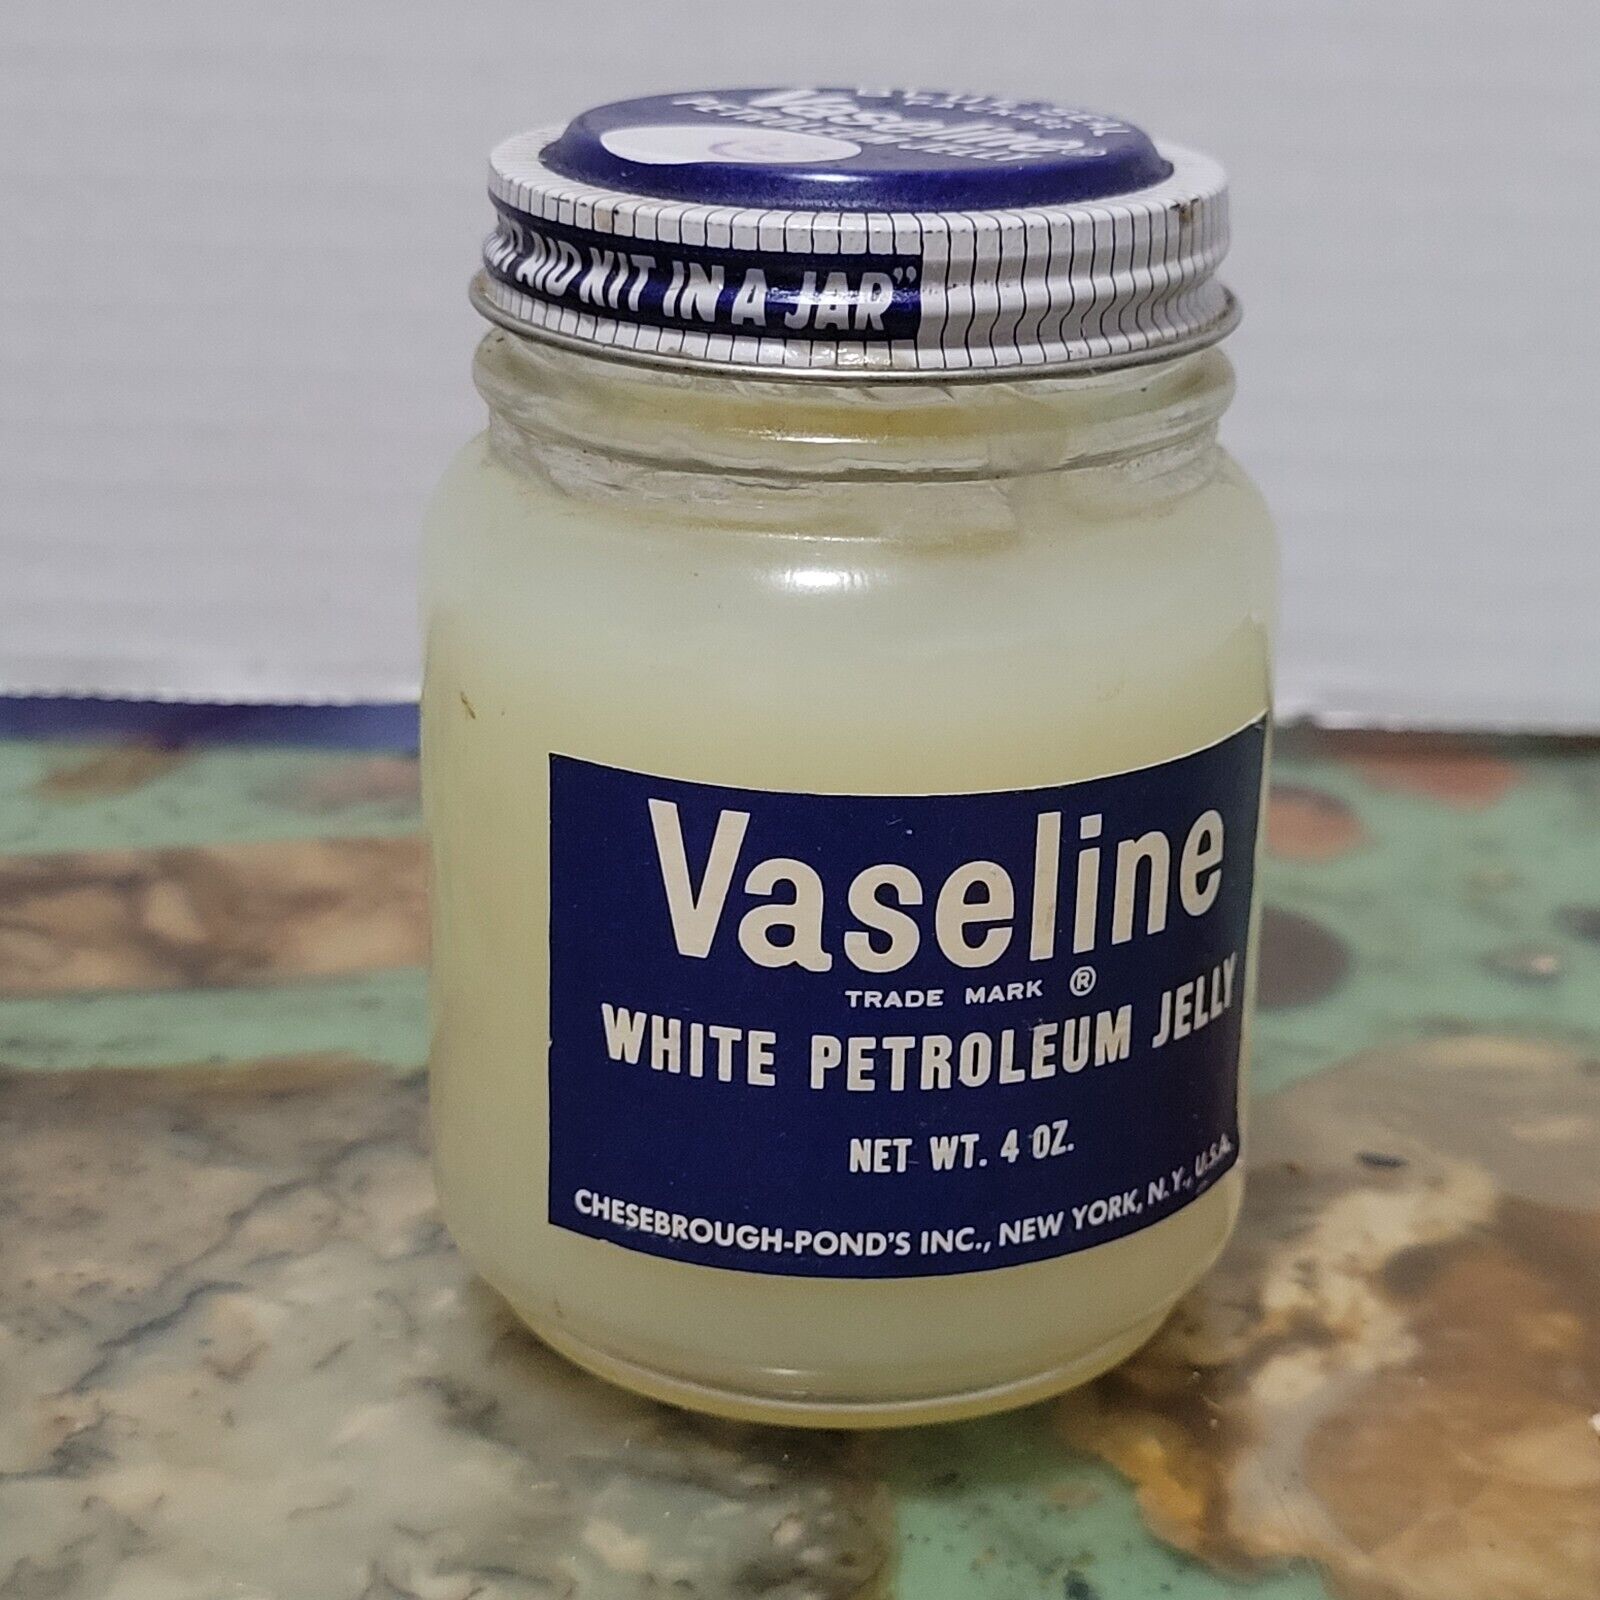 VTG 1950s Vaseline WHITE PETROLEUM JELLY Glass Jar Full Blue Seal Package 4 oz